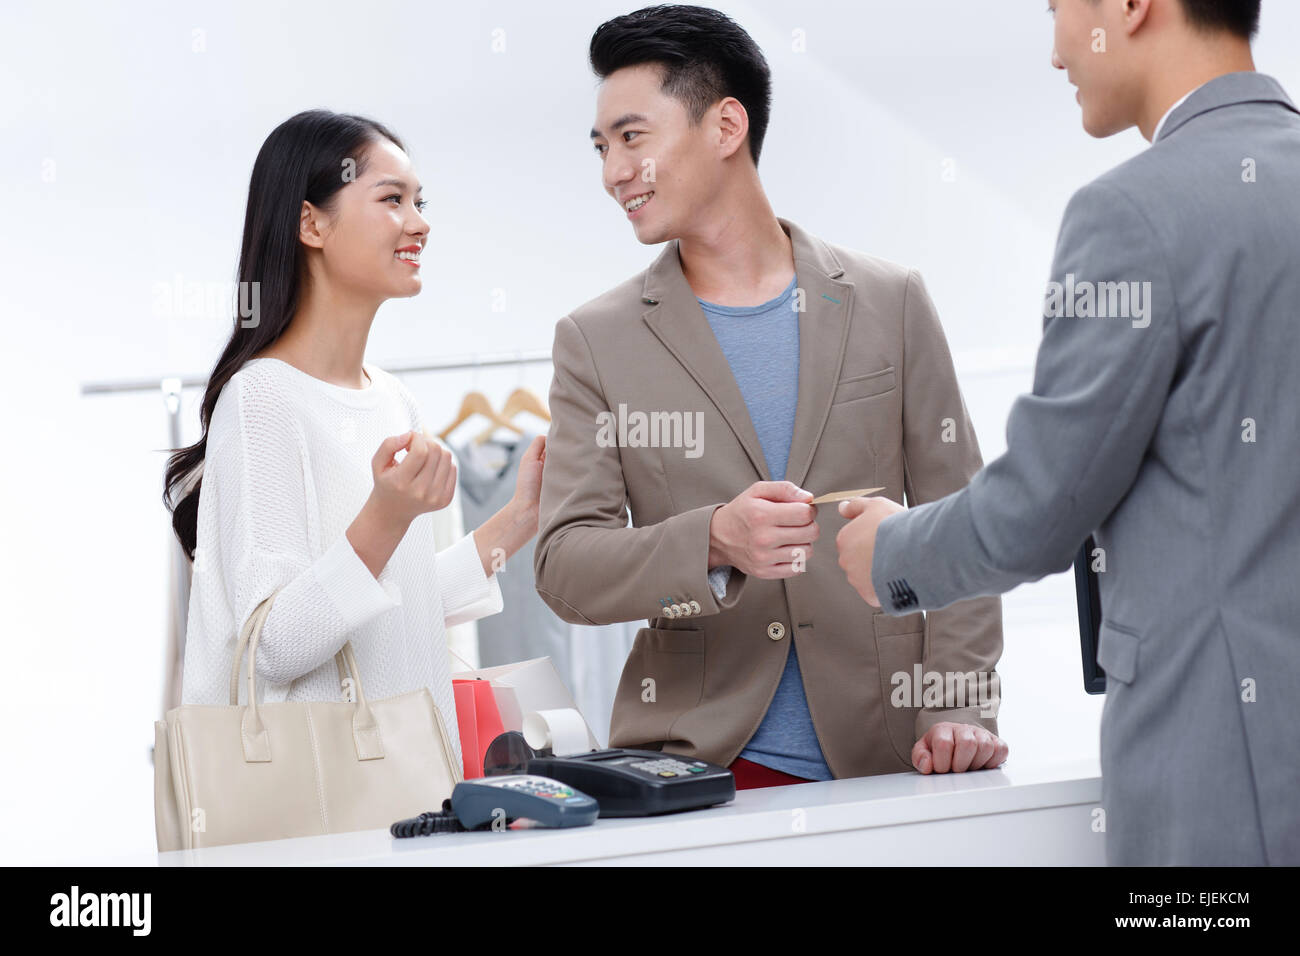 Junge Paare in dem Bekleidungsgeschäft, Kleidung zu kaufen Stockfoto